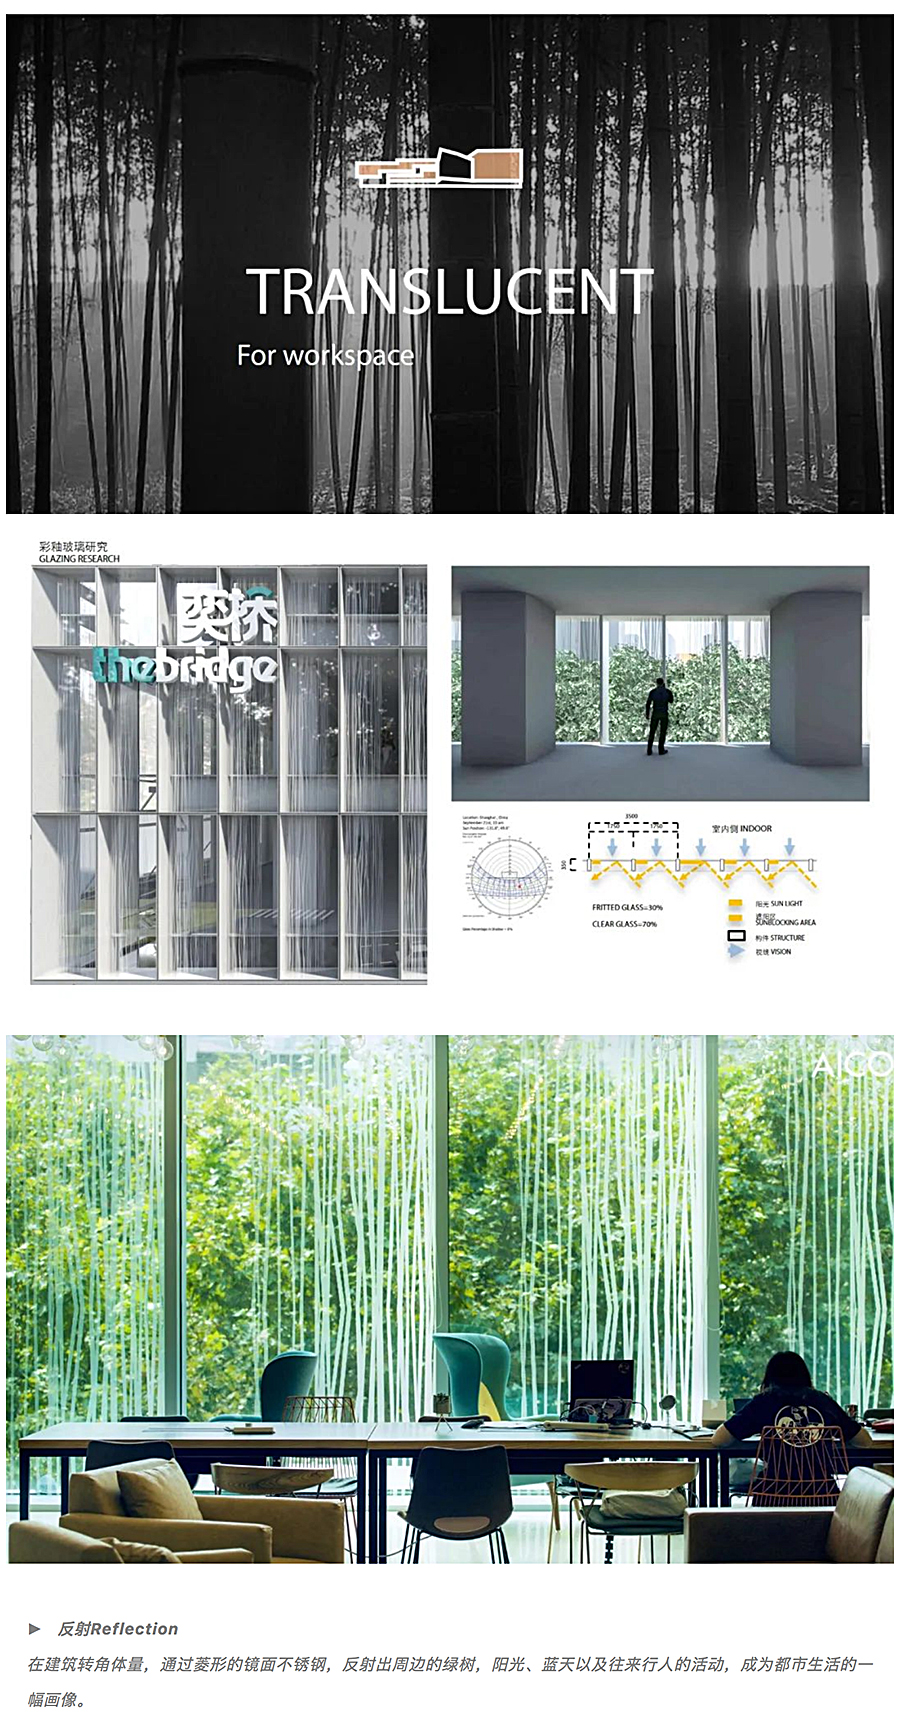 打破边界的立体混合社区：上海腾飞大厦改造-_-AICO-2020-REARD金奖项目赏析_0009_图层-10.jpg